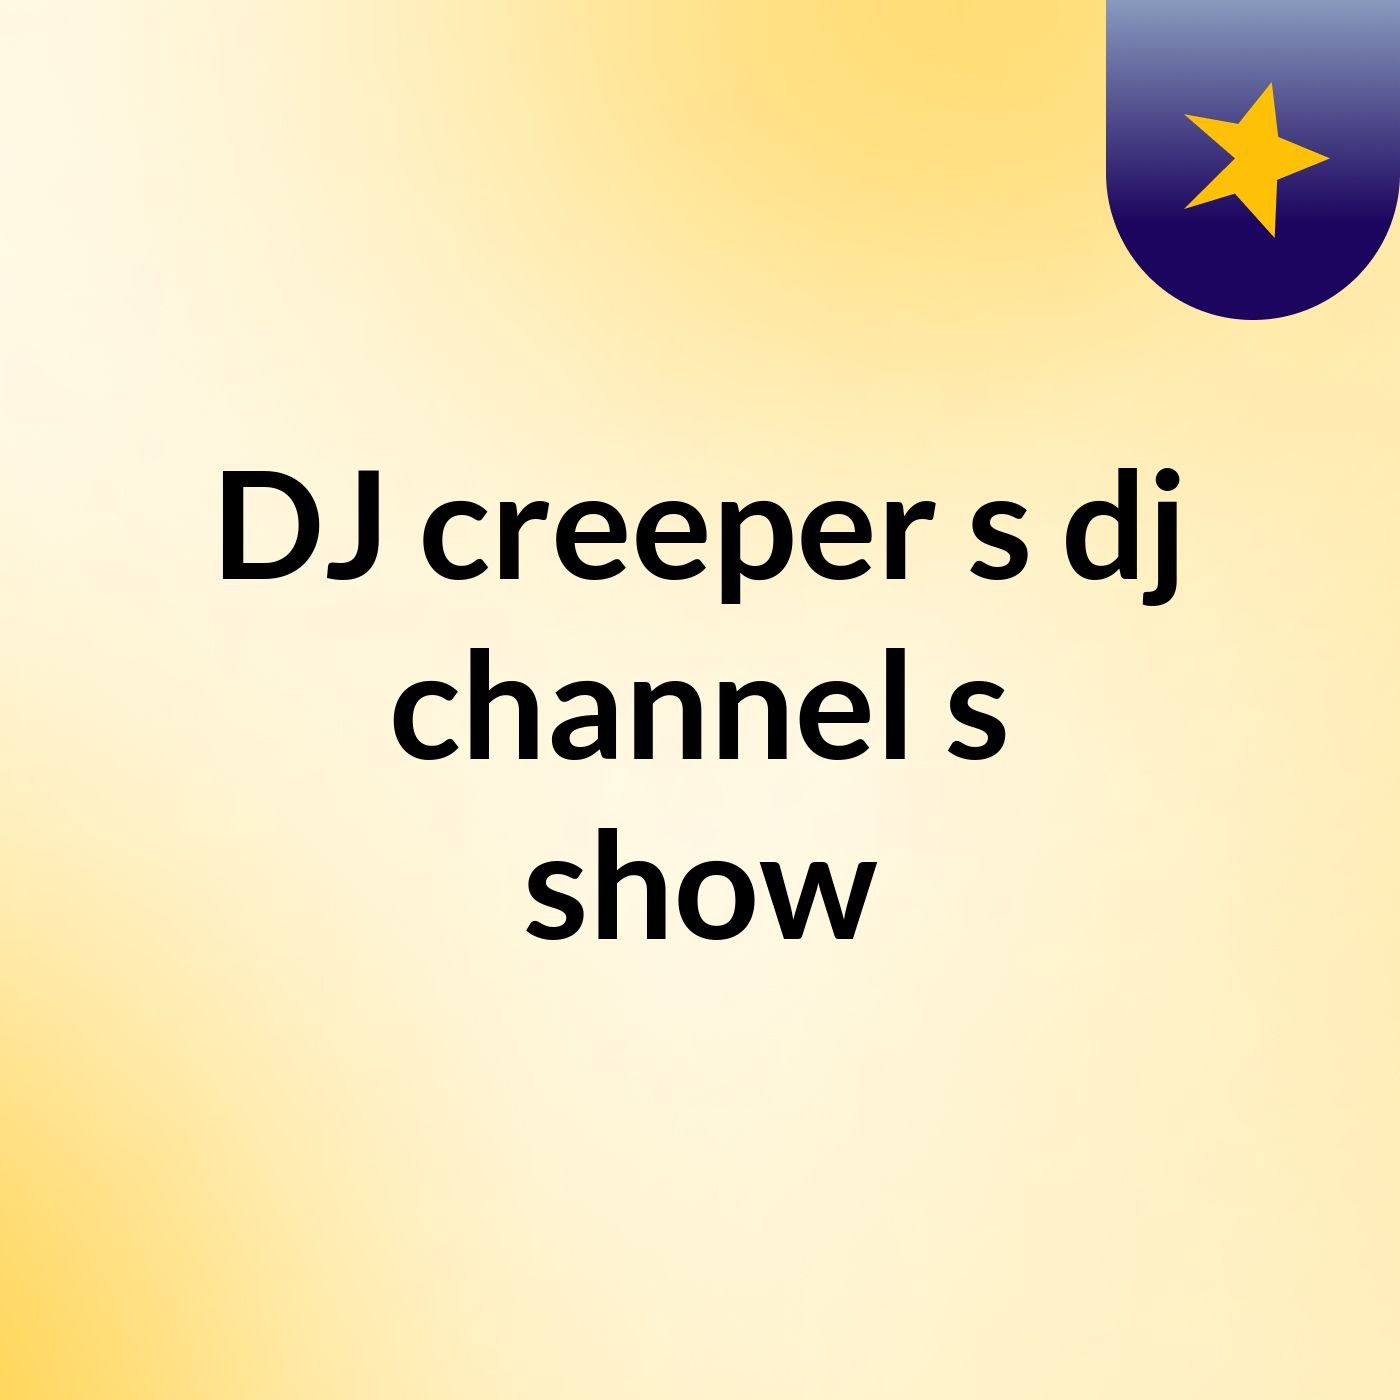 DJ creeper s dj channel's show